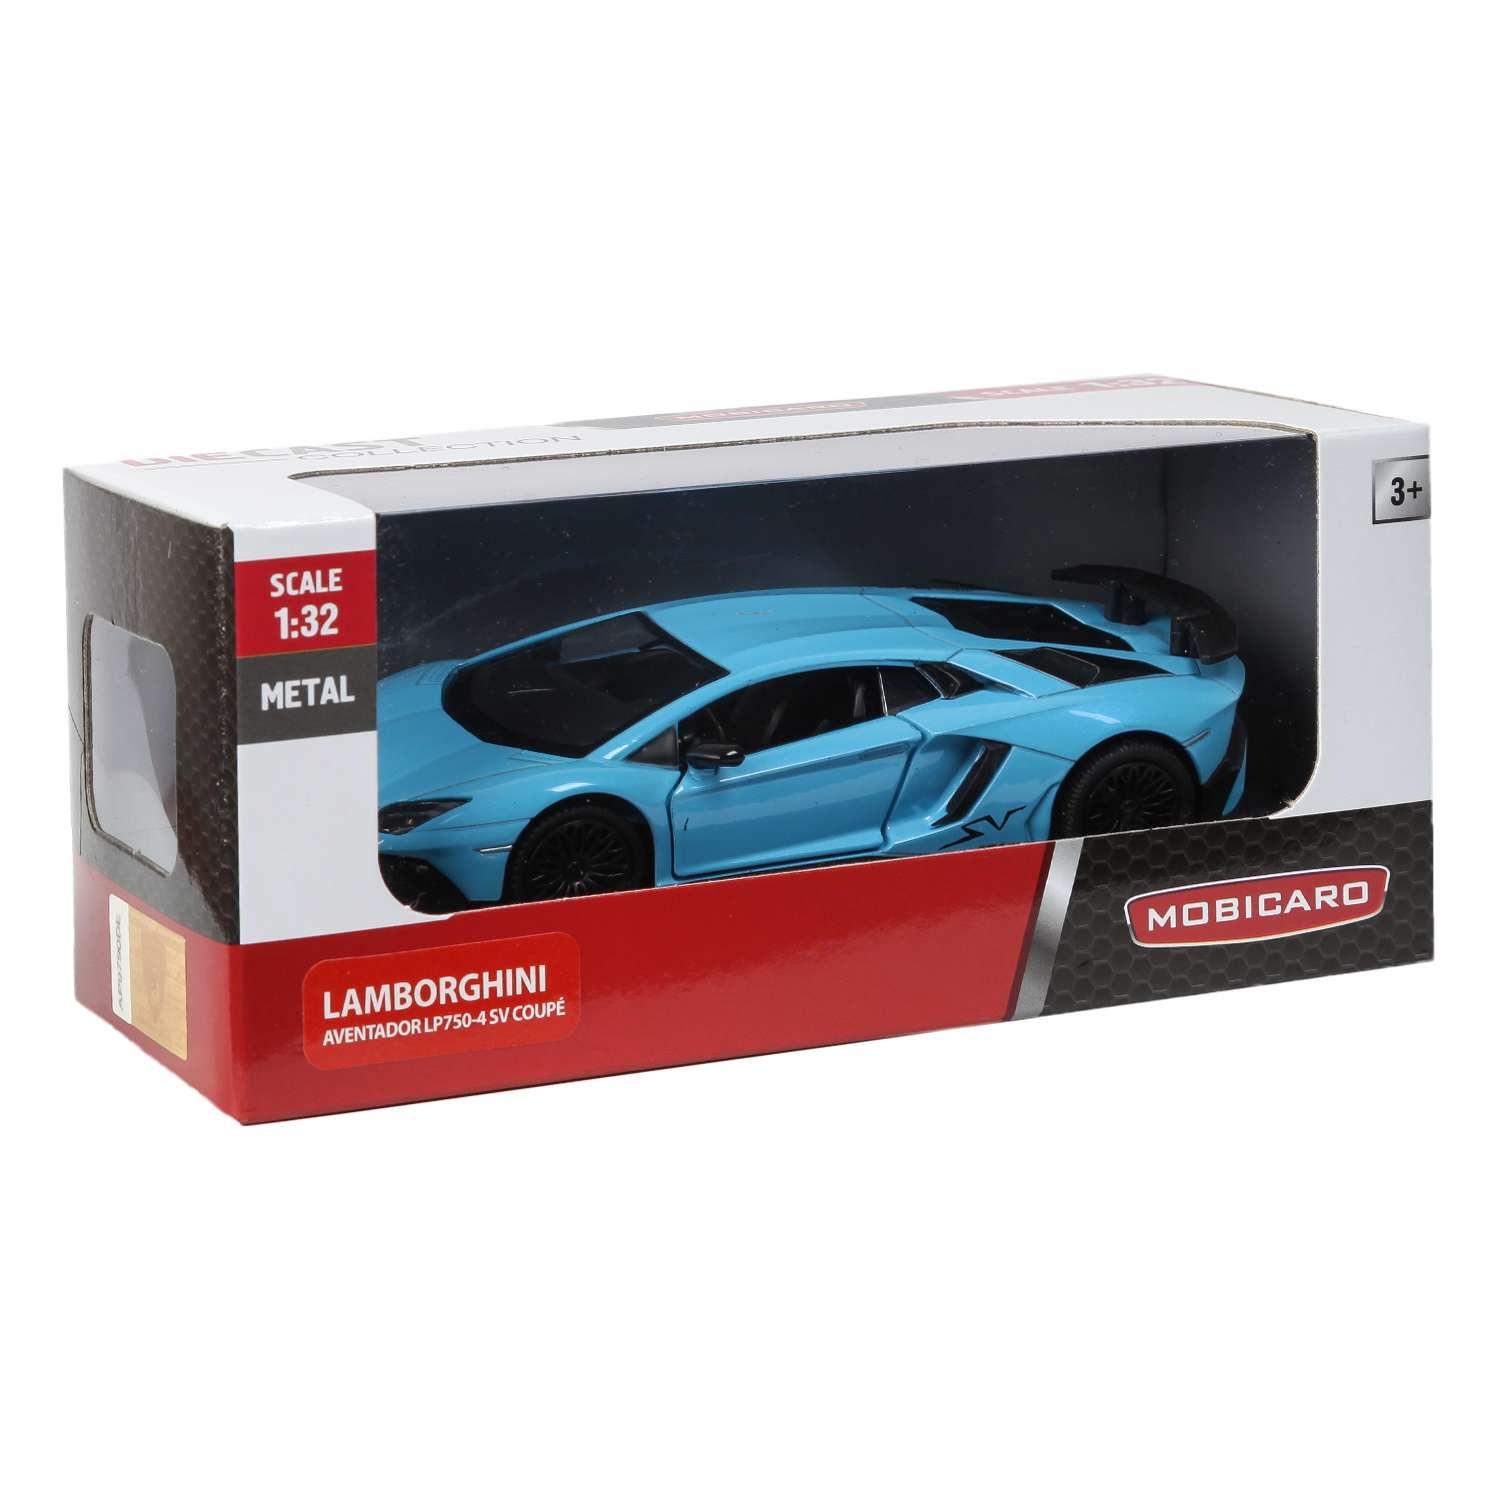 Машинка Mobicaro 1:32 Lamborghini Aventador LP750-4SV в ассортименте 544990 544990 - фото 2